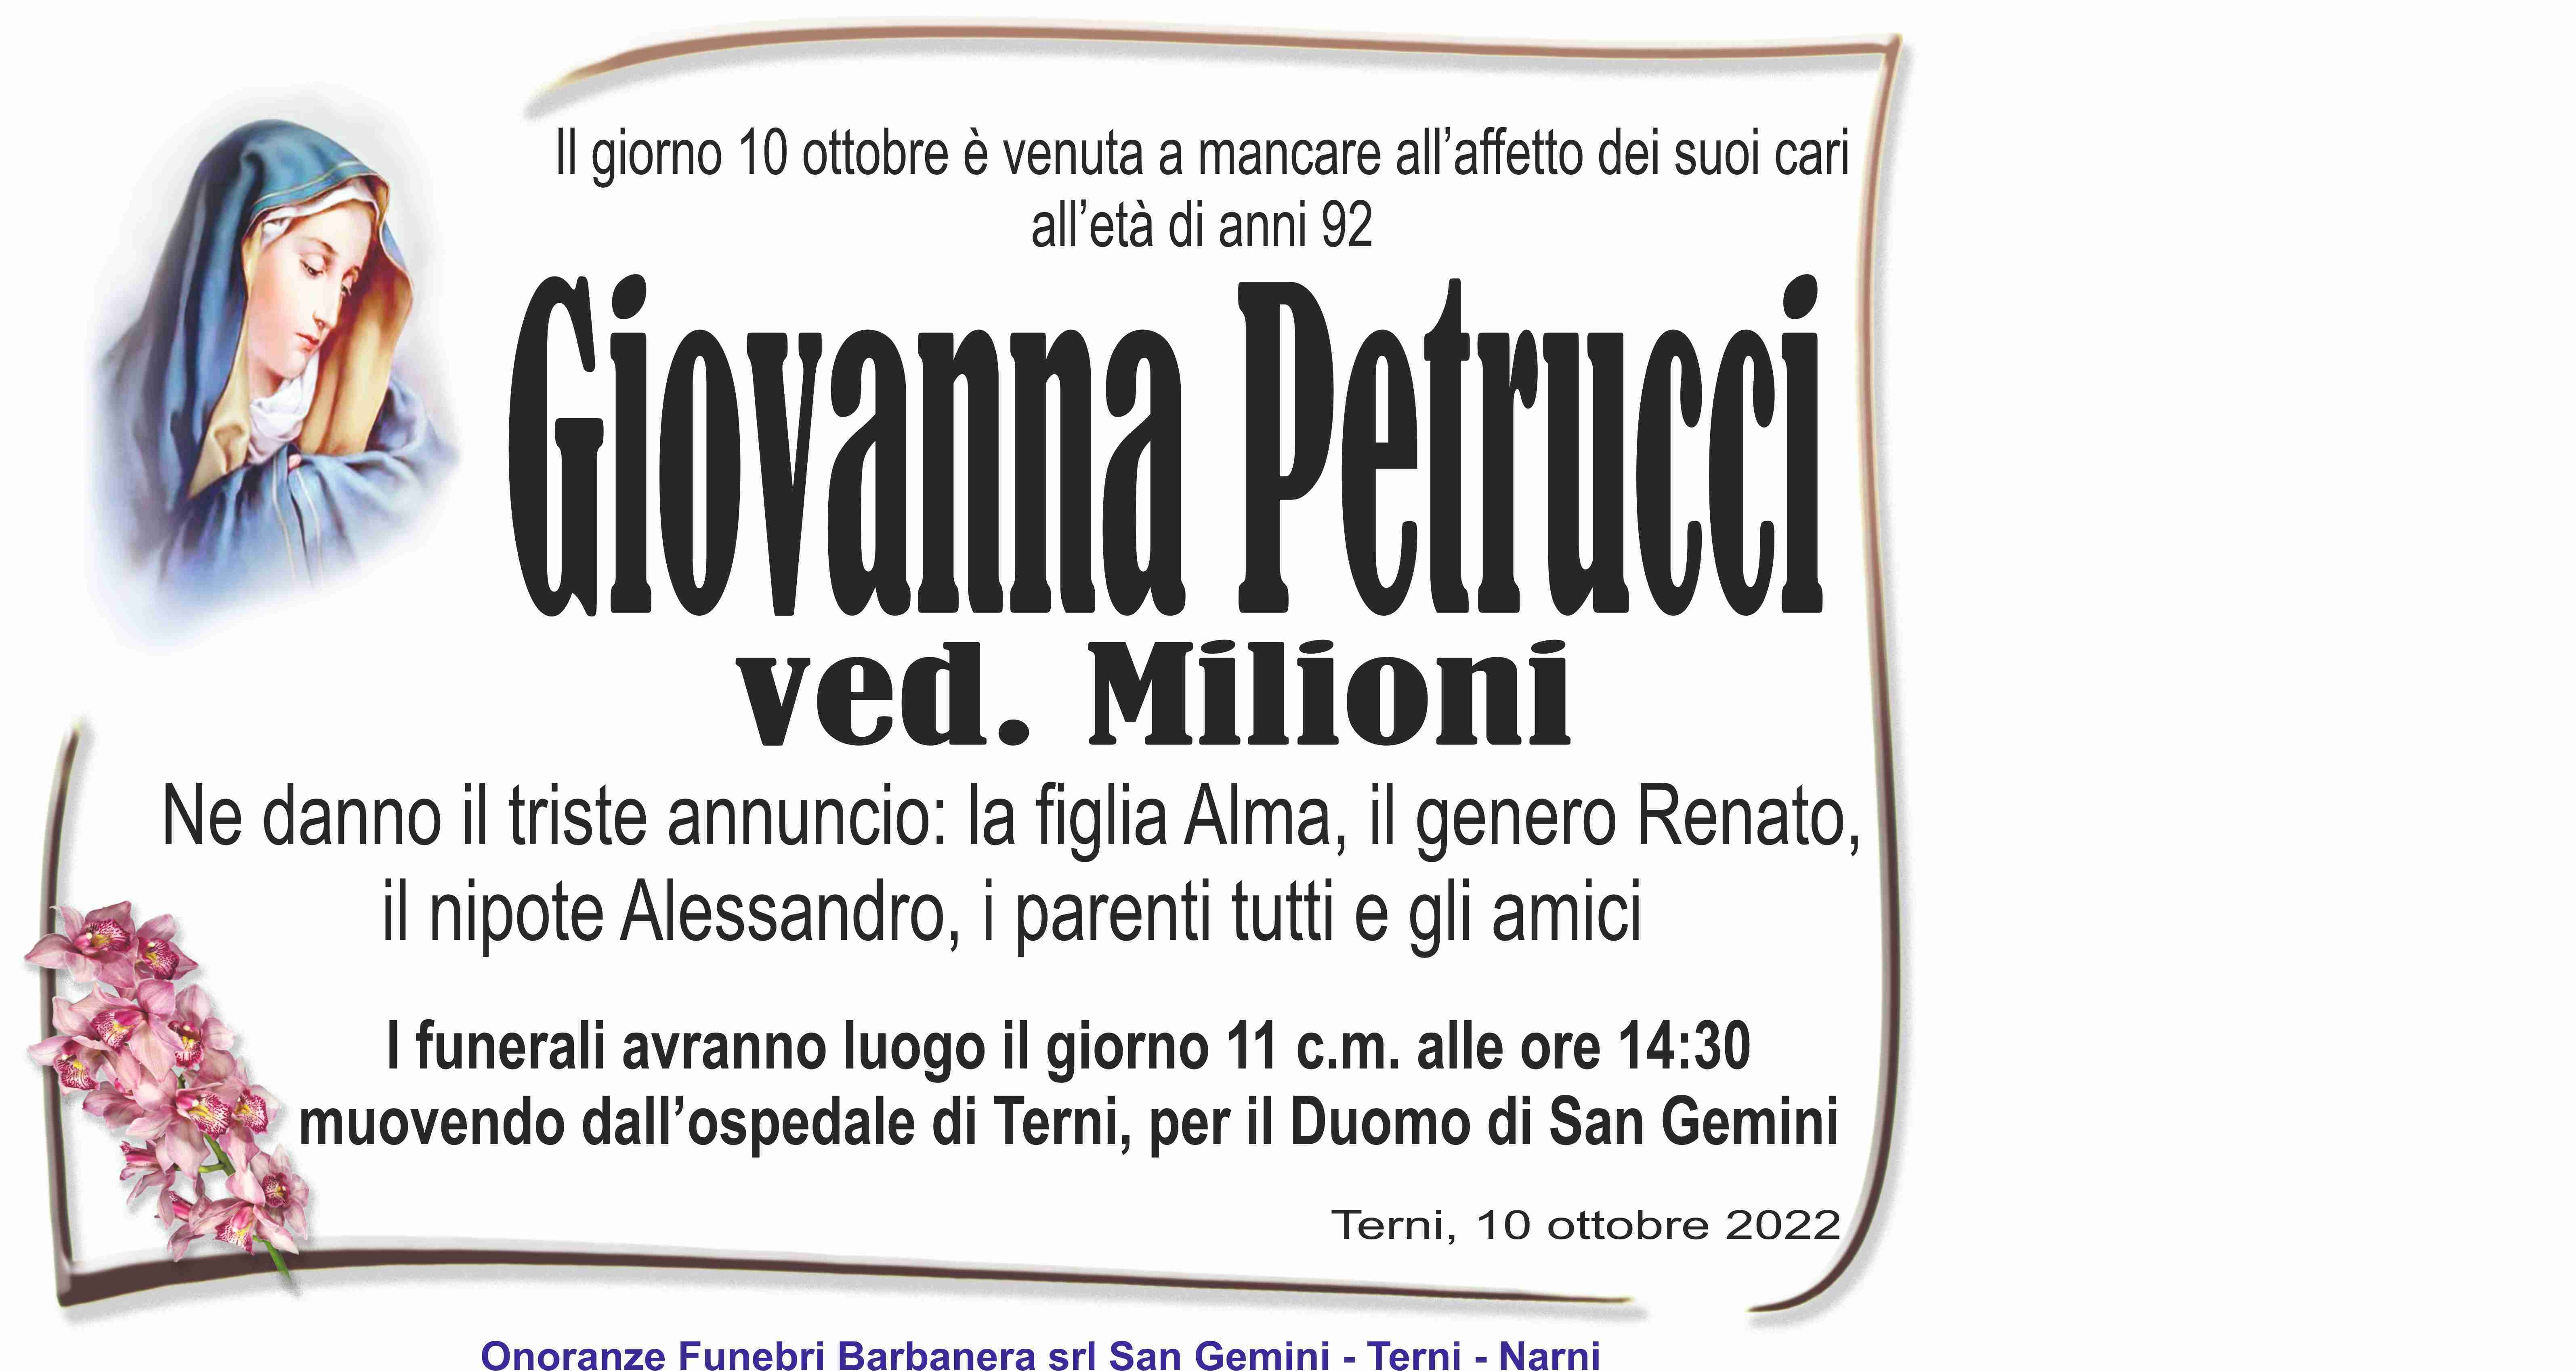 Petrucci Giovanna